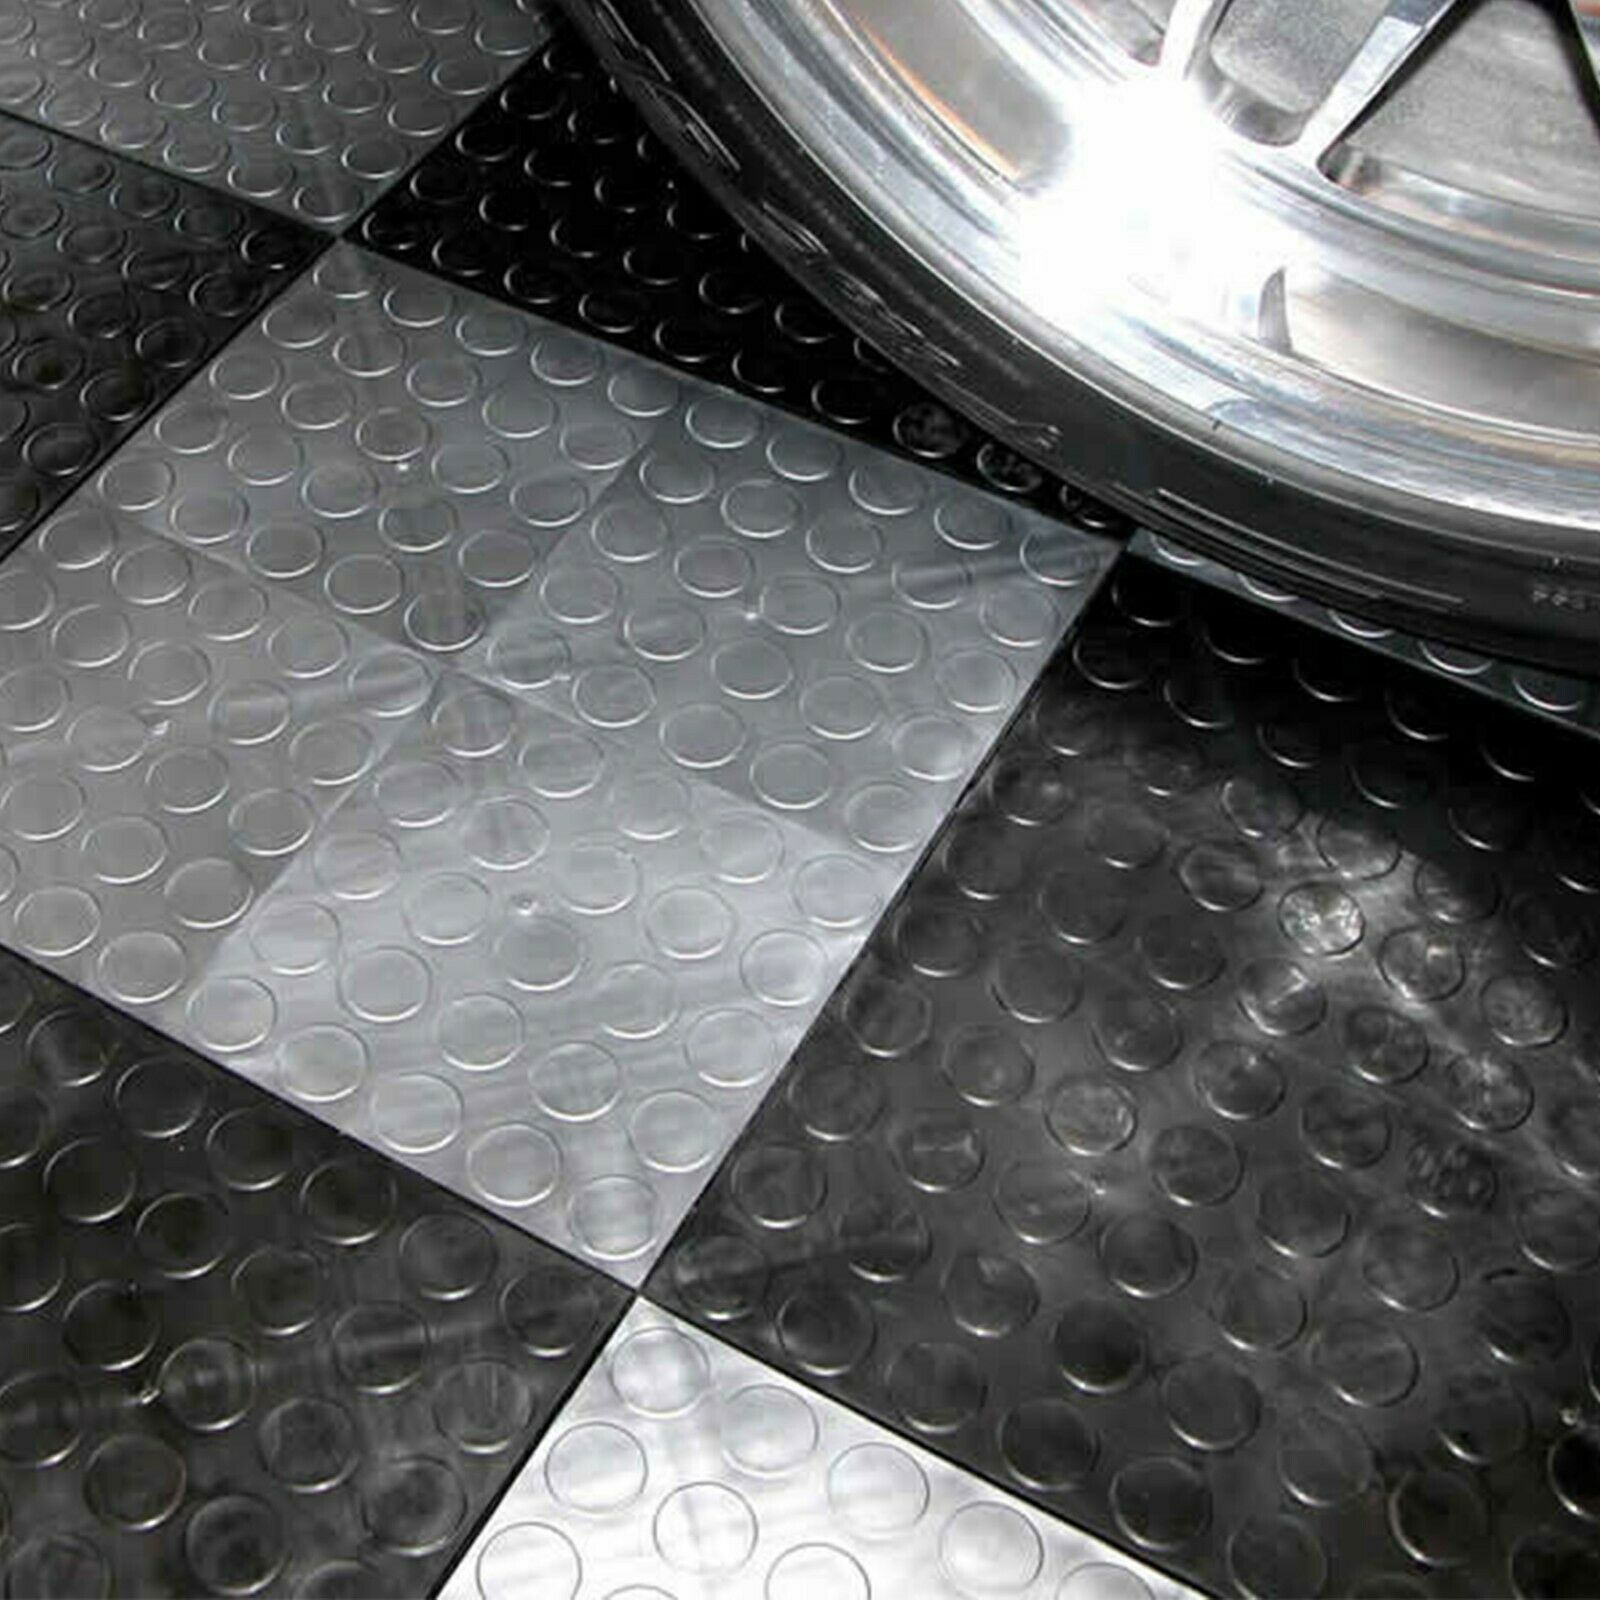 Flooringinc Premium Interlocking Grid-loc Garage Floor Tiles, Coin, 12"x12"